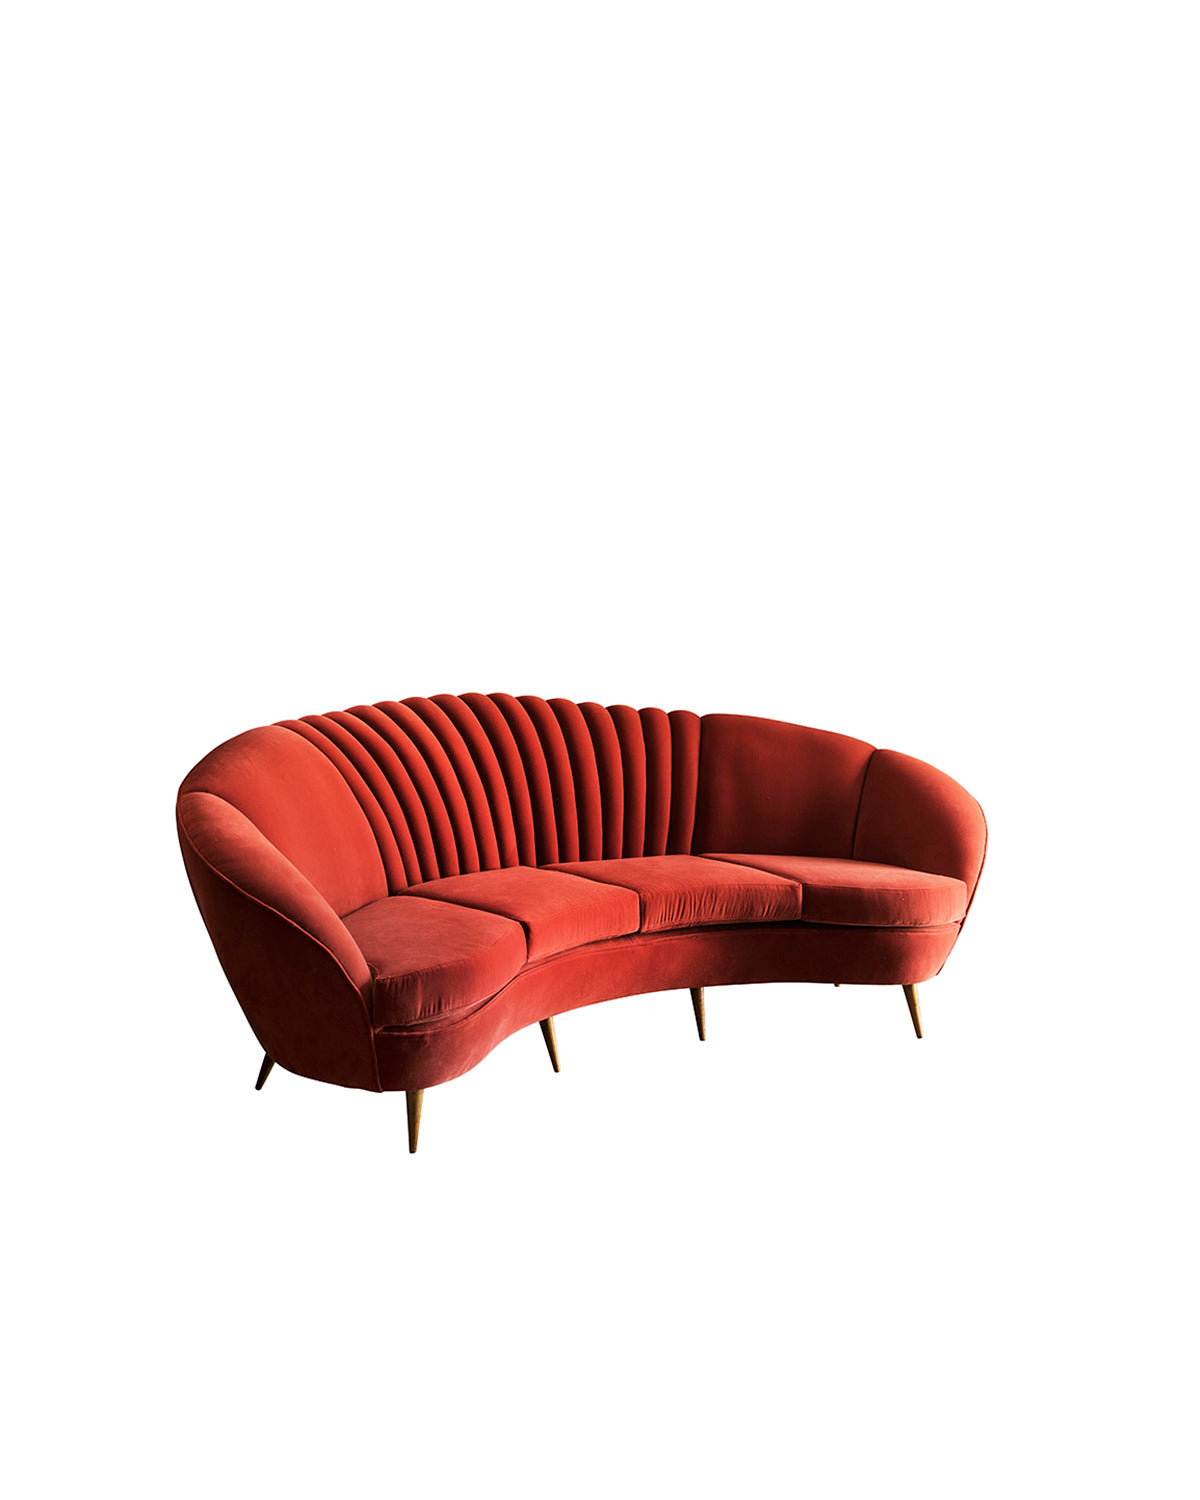 Canapé en velours rouge. Italie, années 50